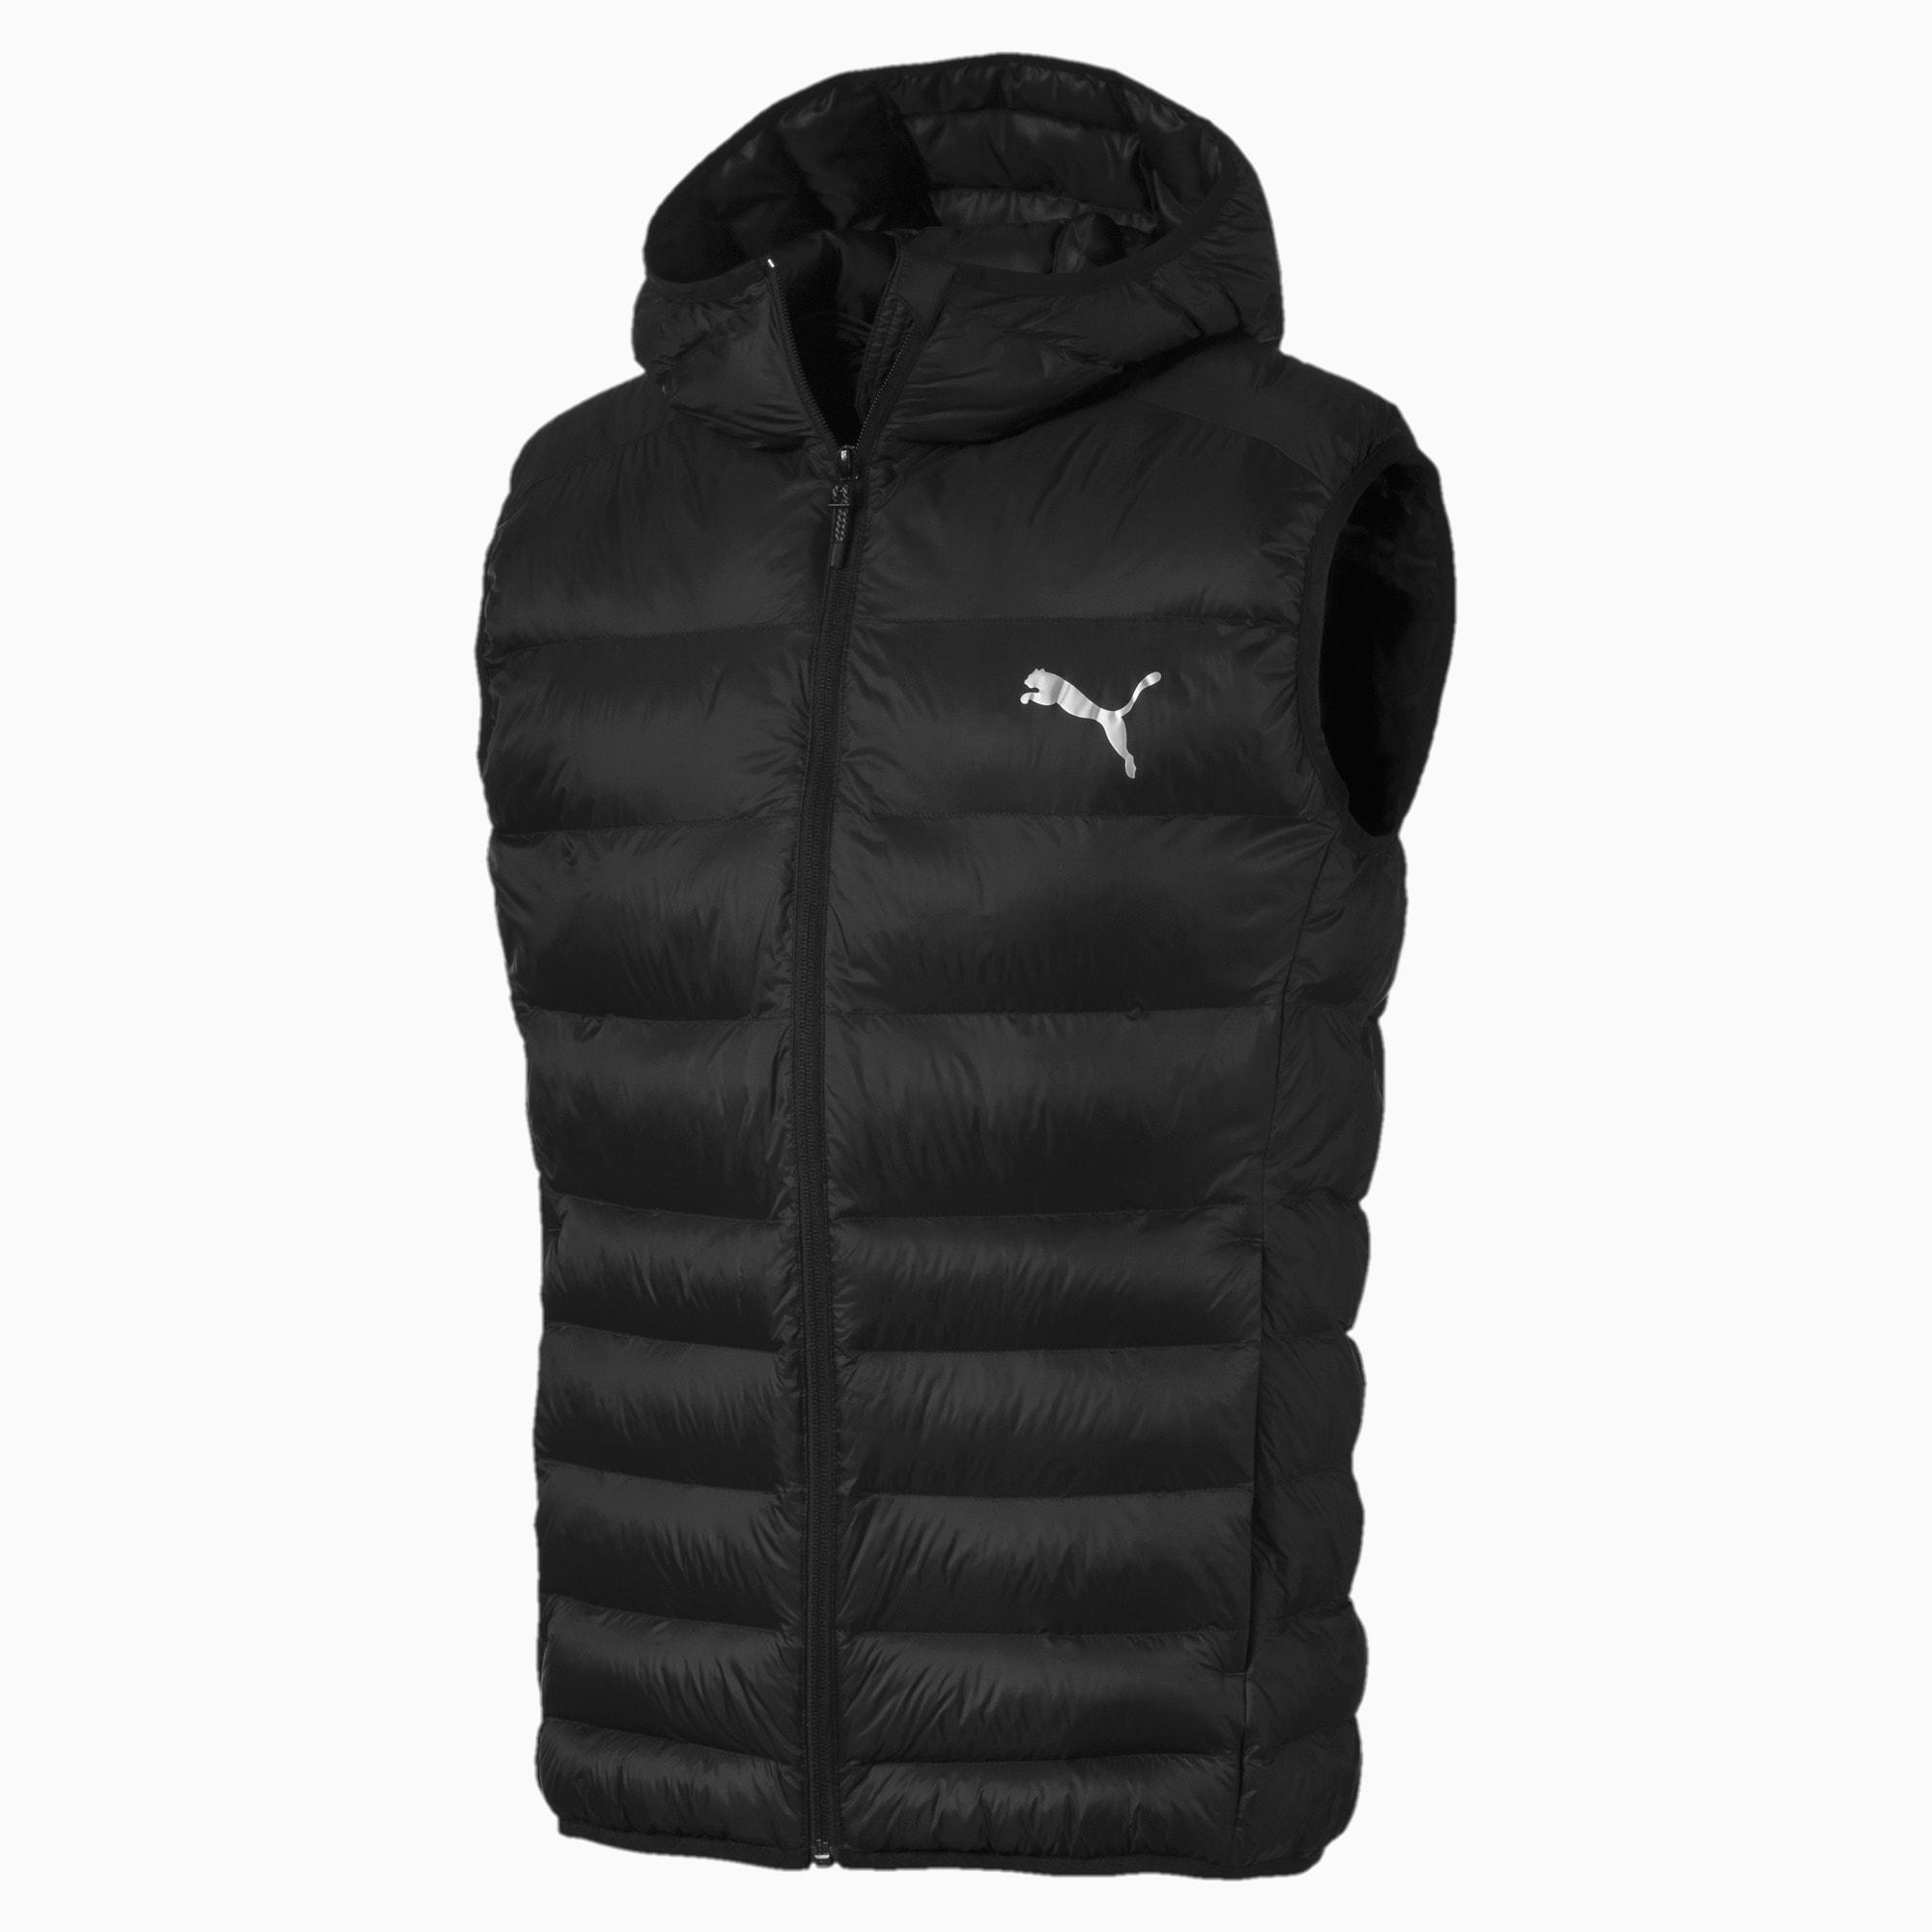 puma warmcell ultralight ad jacket